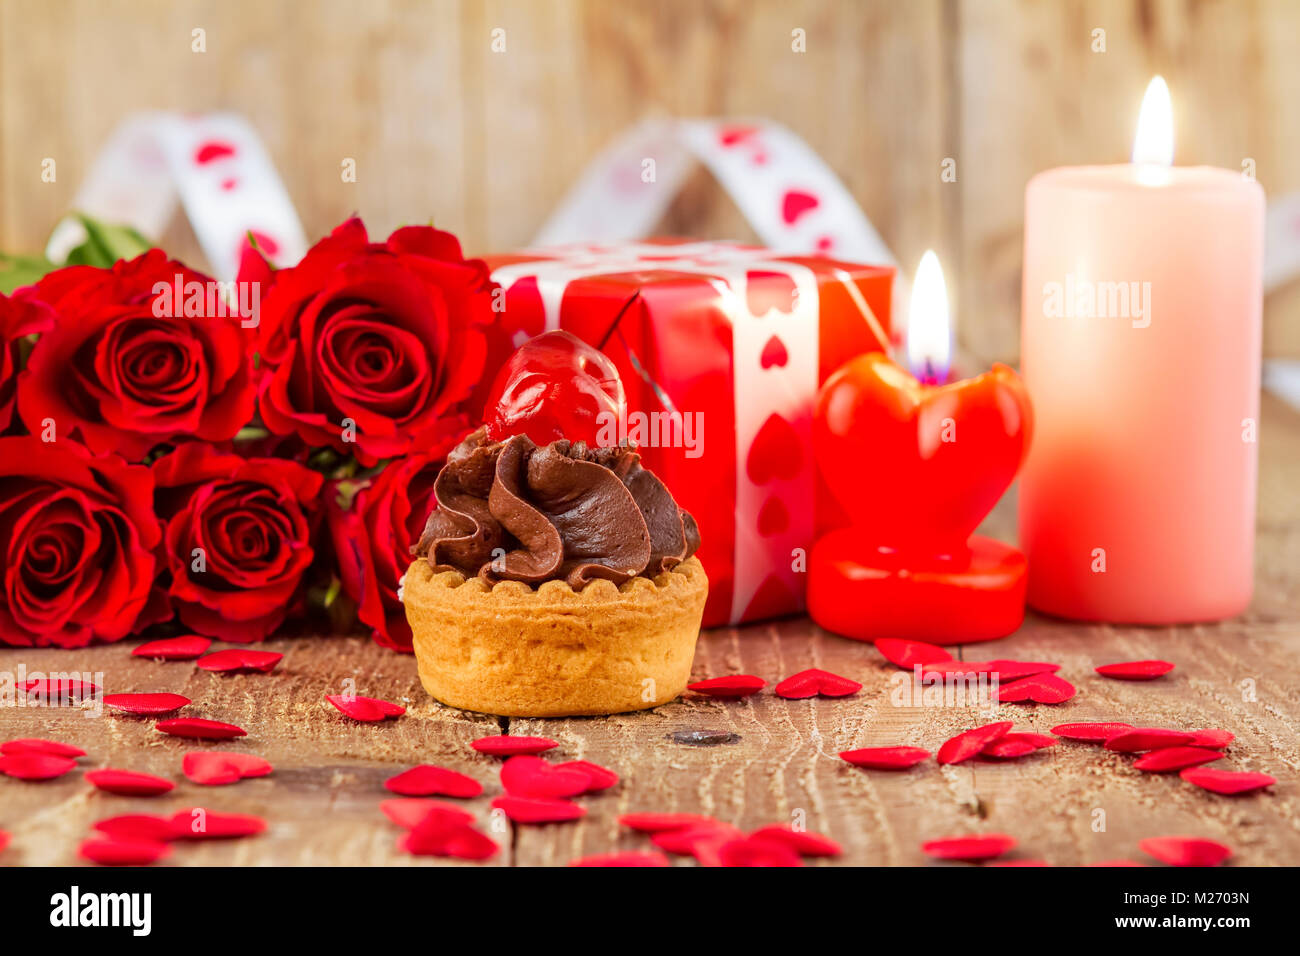 Tortina con cherry nella parte anteriore del bouquet di rose rosse e candele su sfondo di legno. Il giorno di San Valentino del concetto. Focus sulla torta! Foto Stock